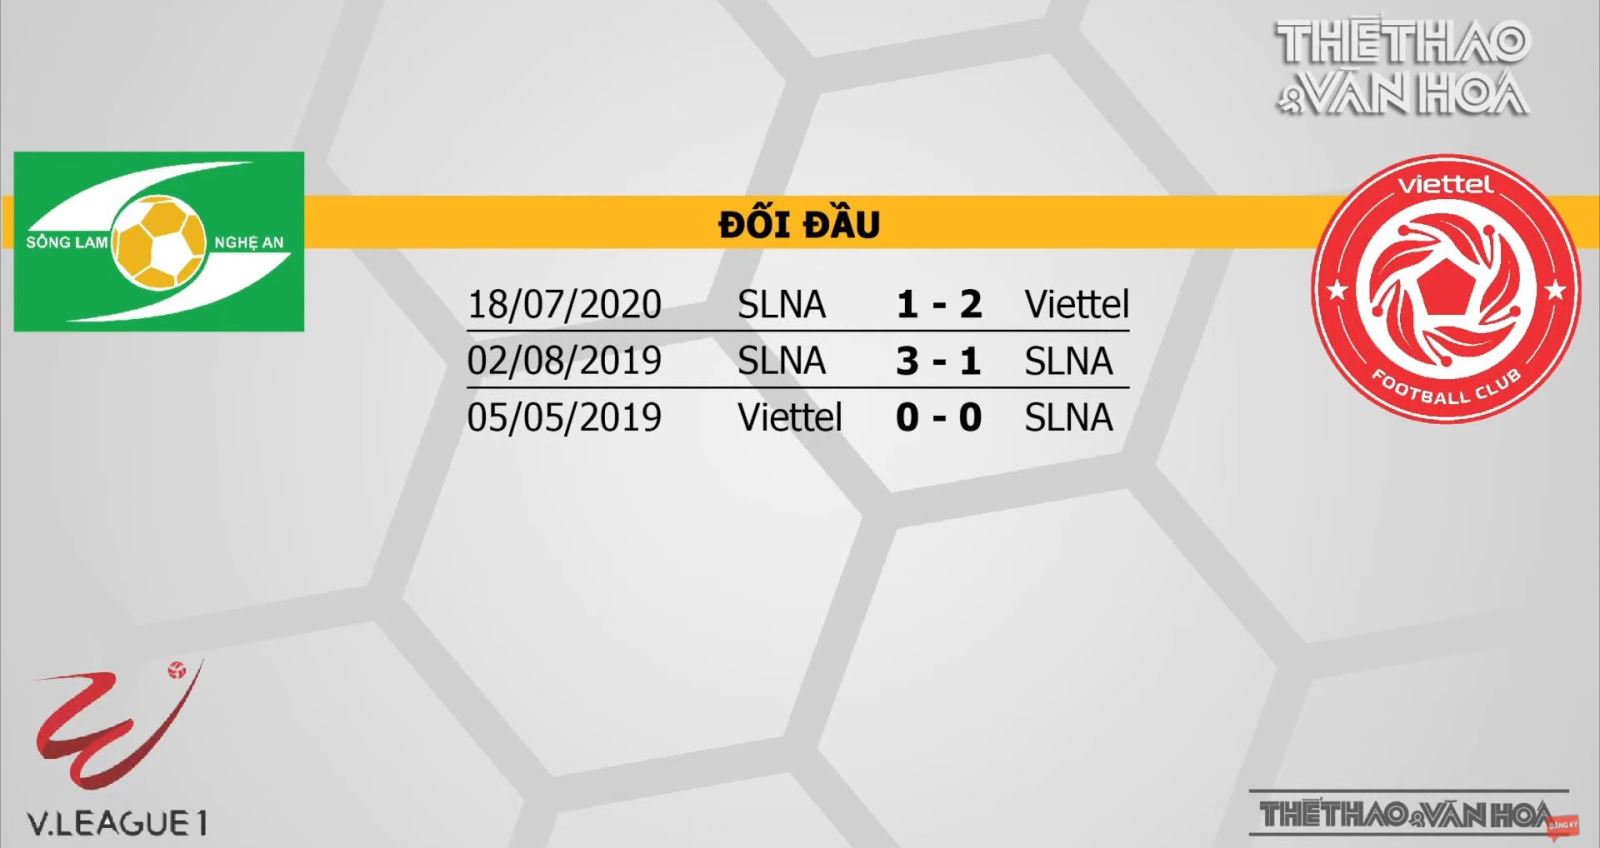 Trực tiếp bóng đá hôm nay: SLNA vs Viettel. BĐTV. VTV6. Trực tiếp bóng đá SLNA